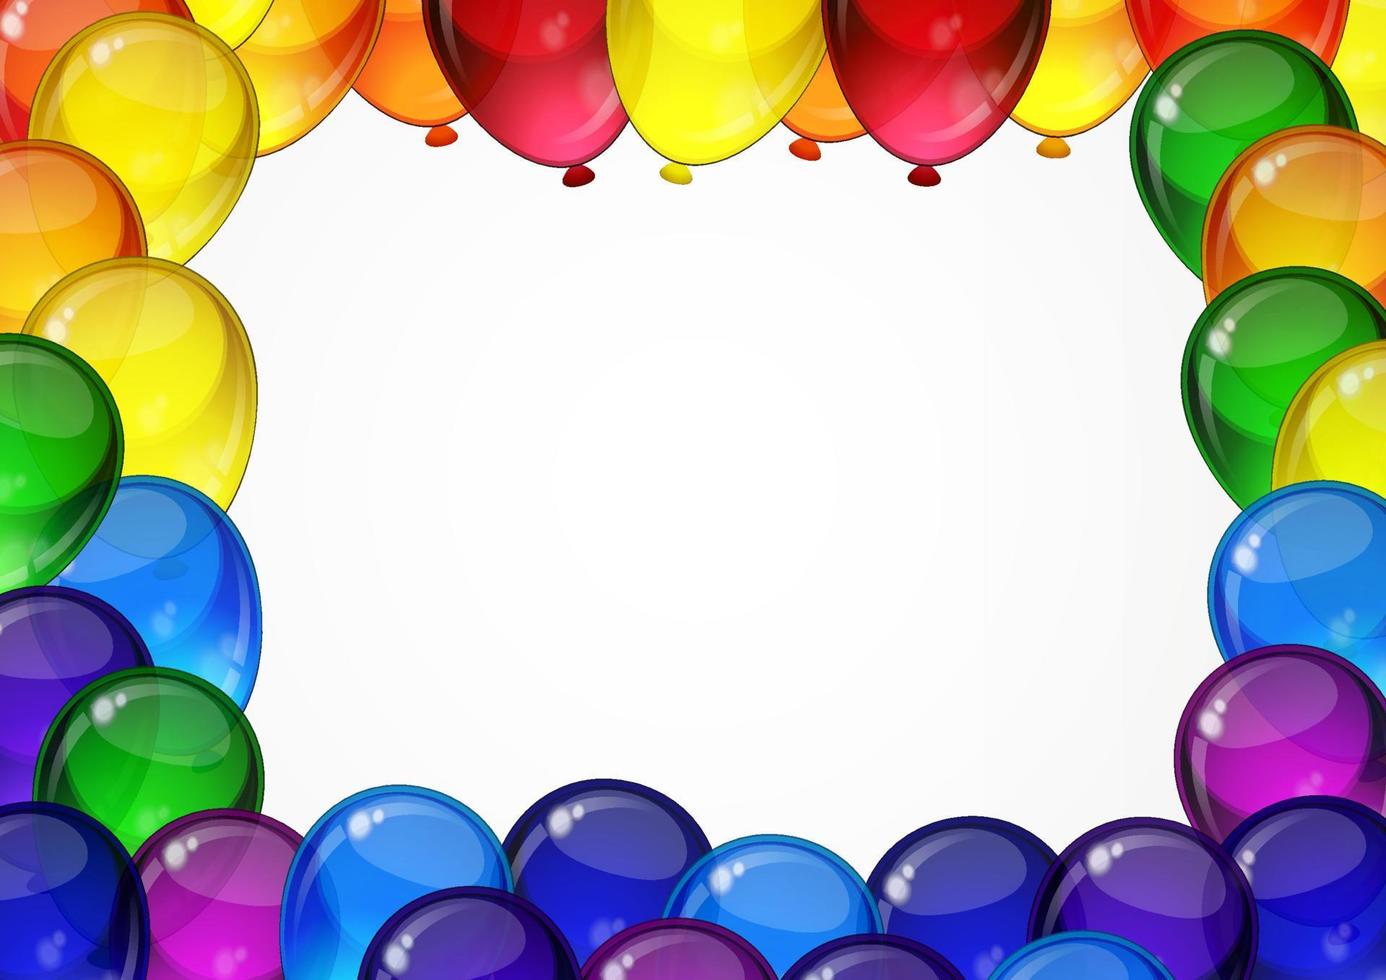 kleurrijke feestelijke vector ballonnen op een witte achtergrond voor feest, vakantie, verjaardagsfeestje kaart met ruimte voor je tekst. a4 indeling.